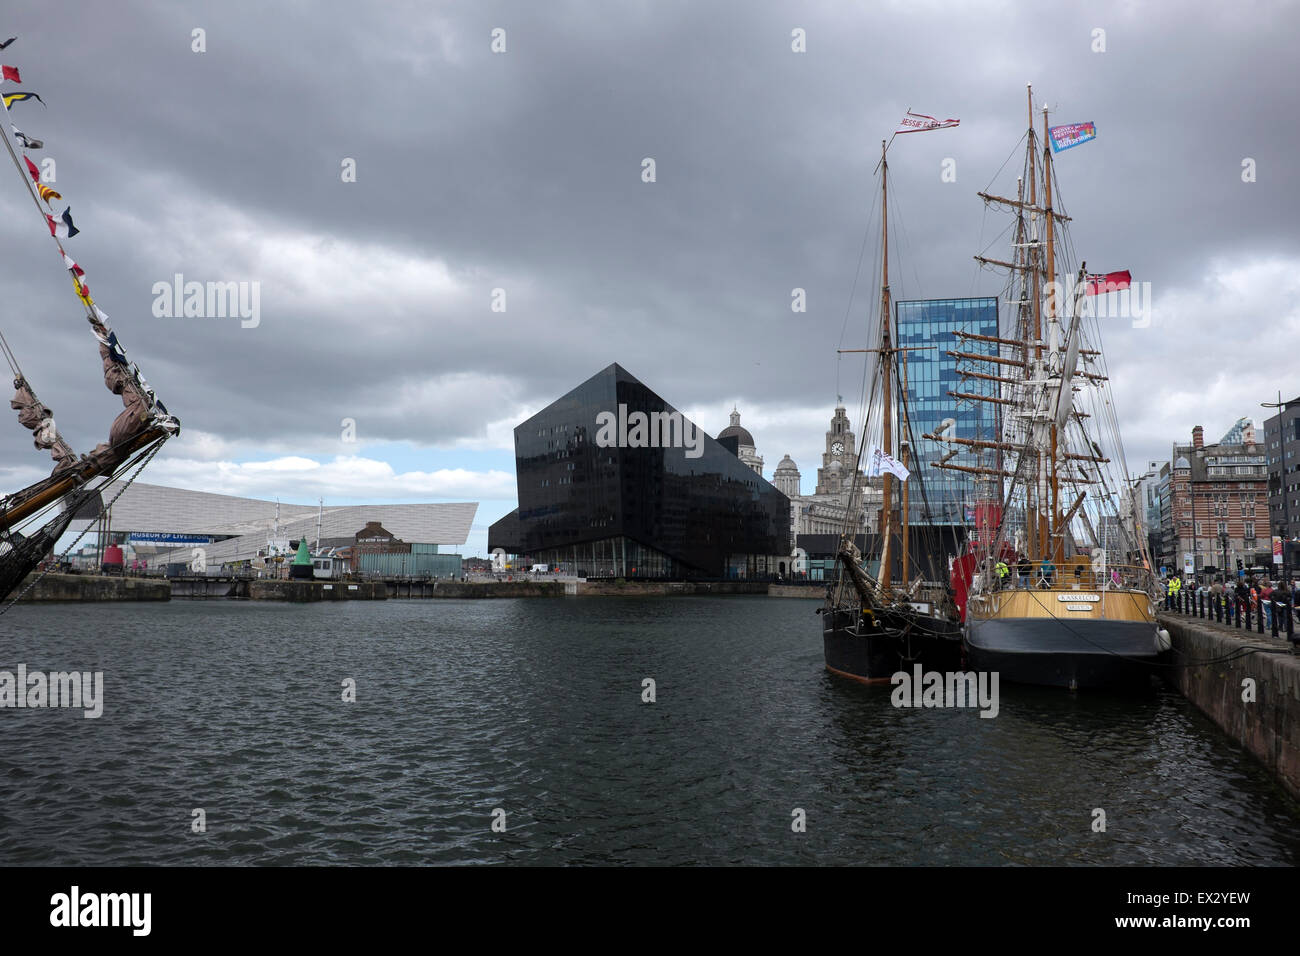 Liverpool Albert Dock navires à voile Ciel Ciel gris Banque D'Images